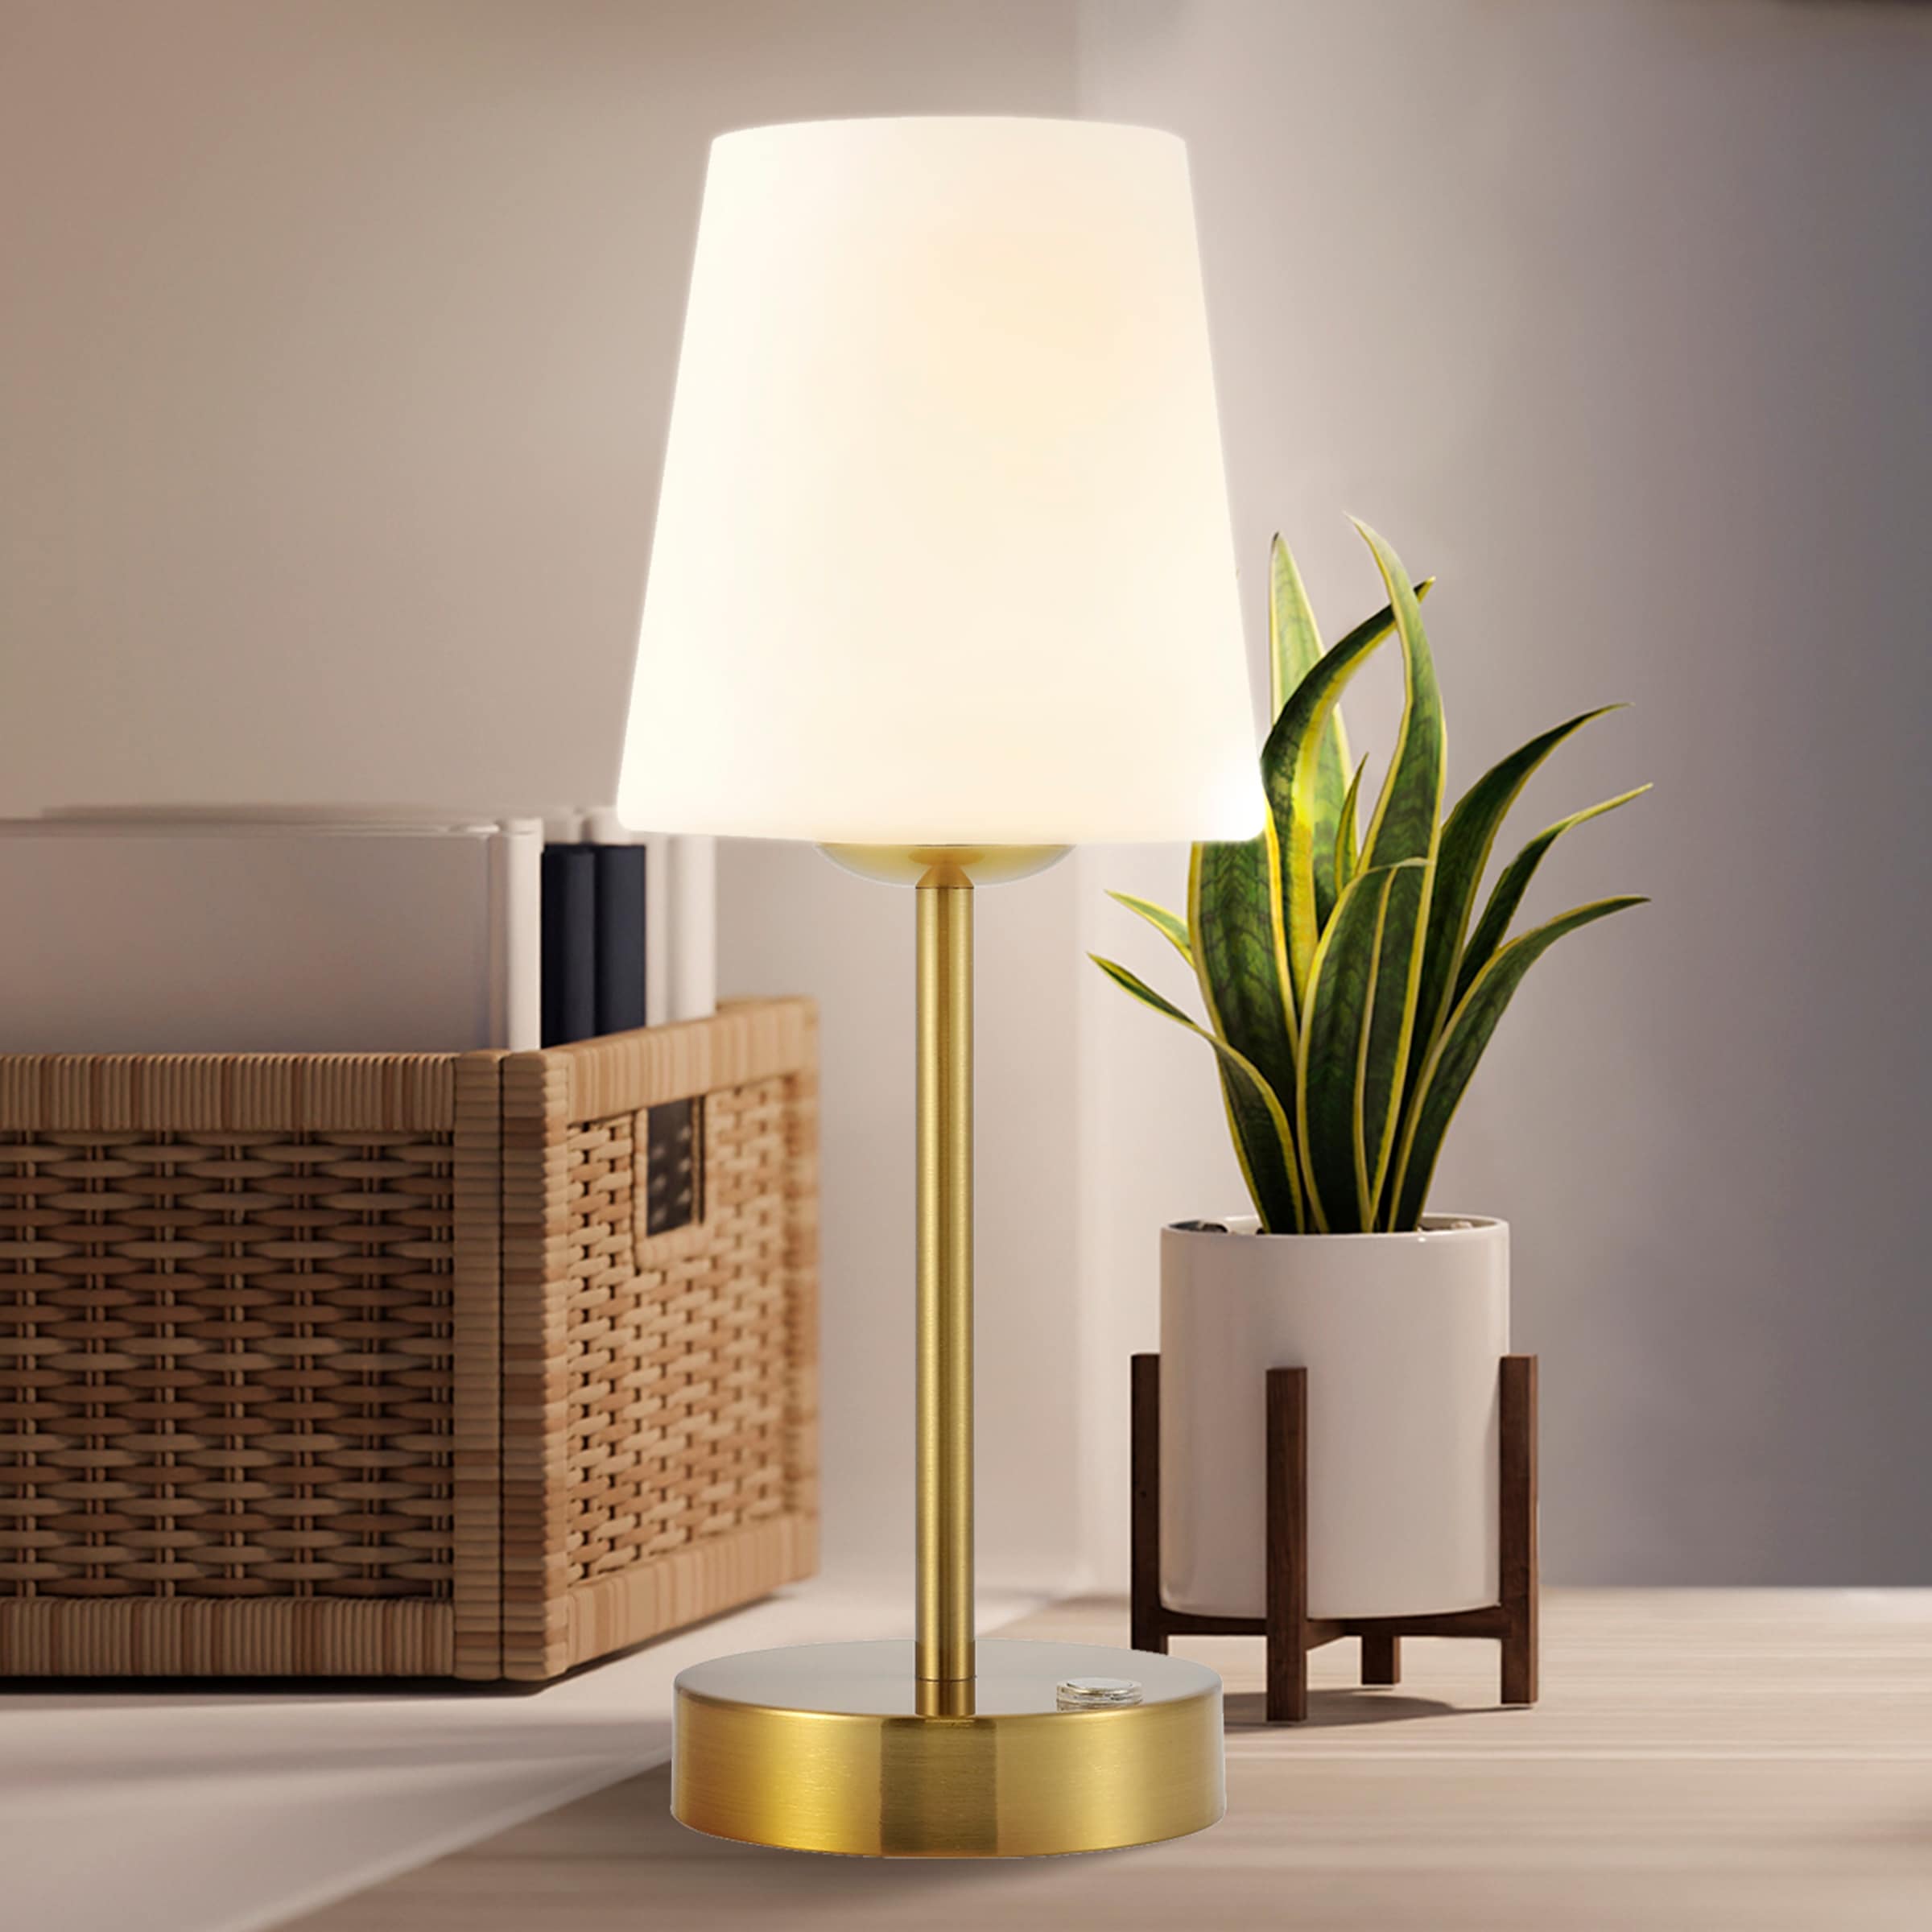 Minimalist Lamps & Minimalist Lights